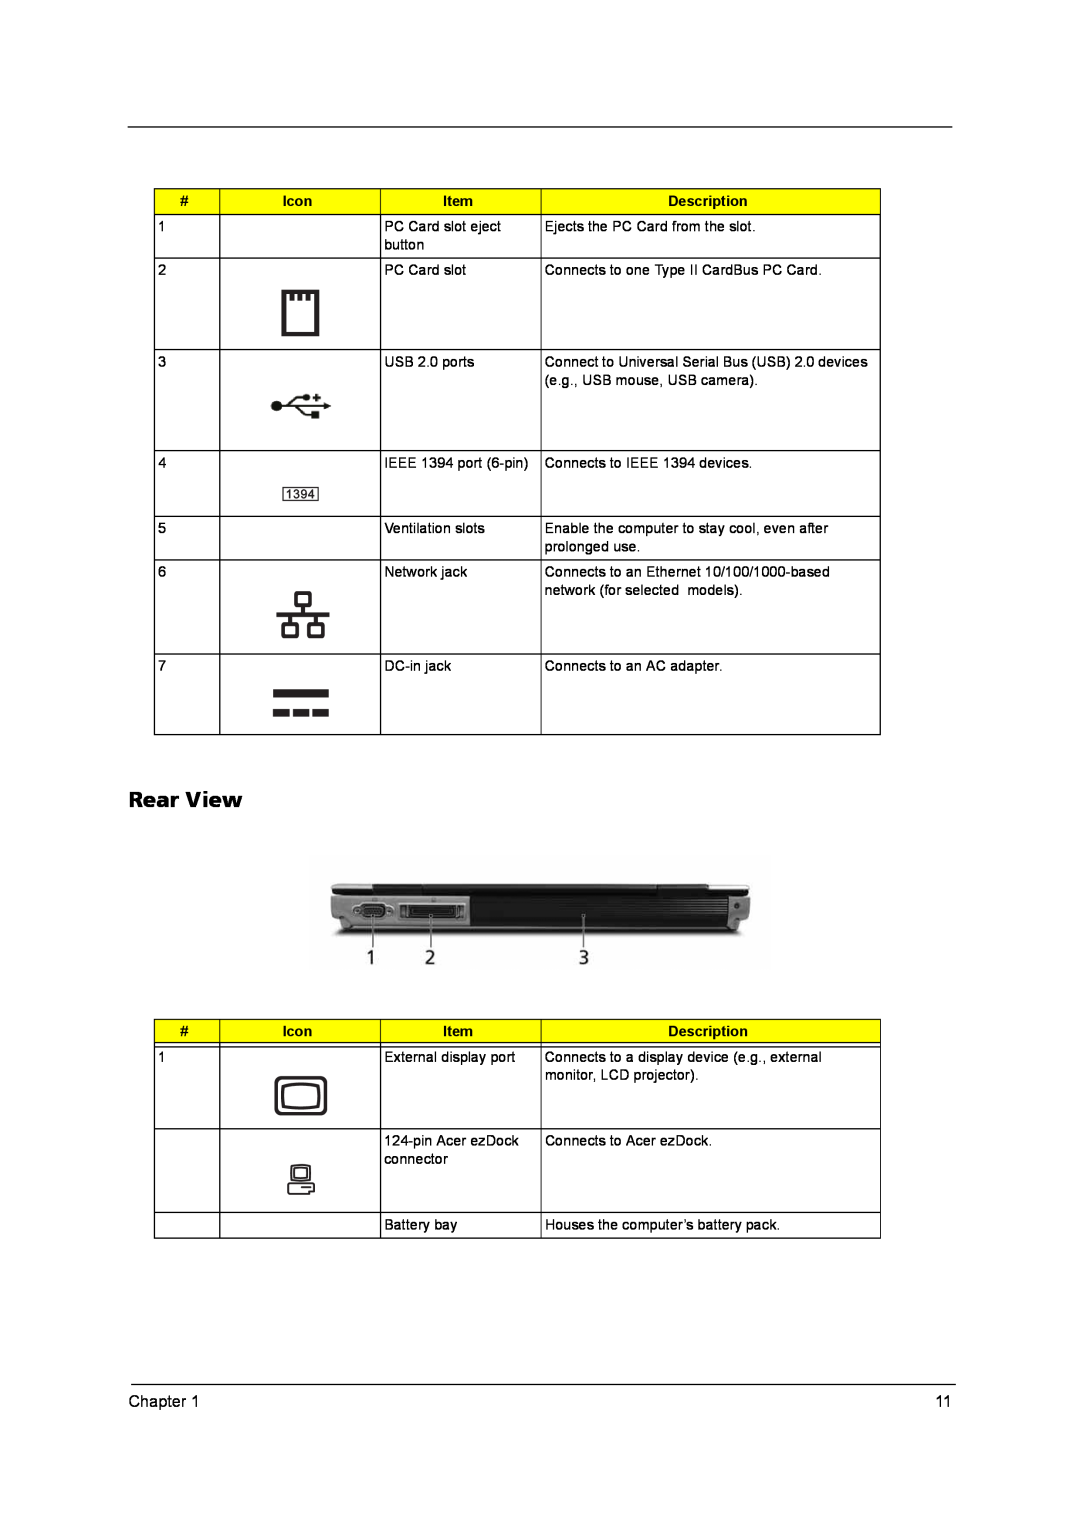 Acer LISHIN SLS0335A19A54LF, QD14TL0102, PLUTO MK6025GAS, MK4025GAS, N141I1-L05 (GLARE), KA100A Rear View, Icon, Description 